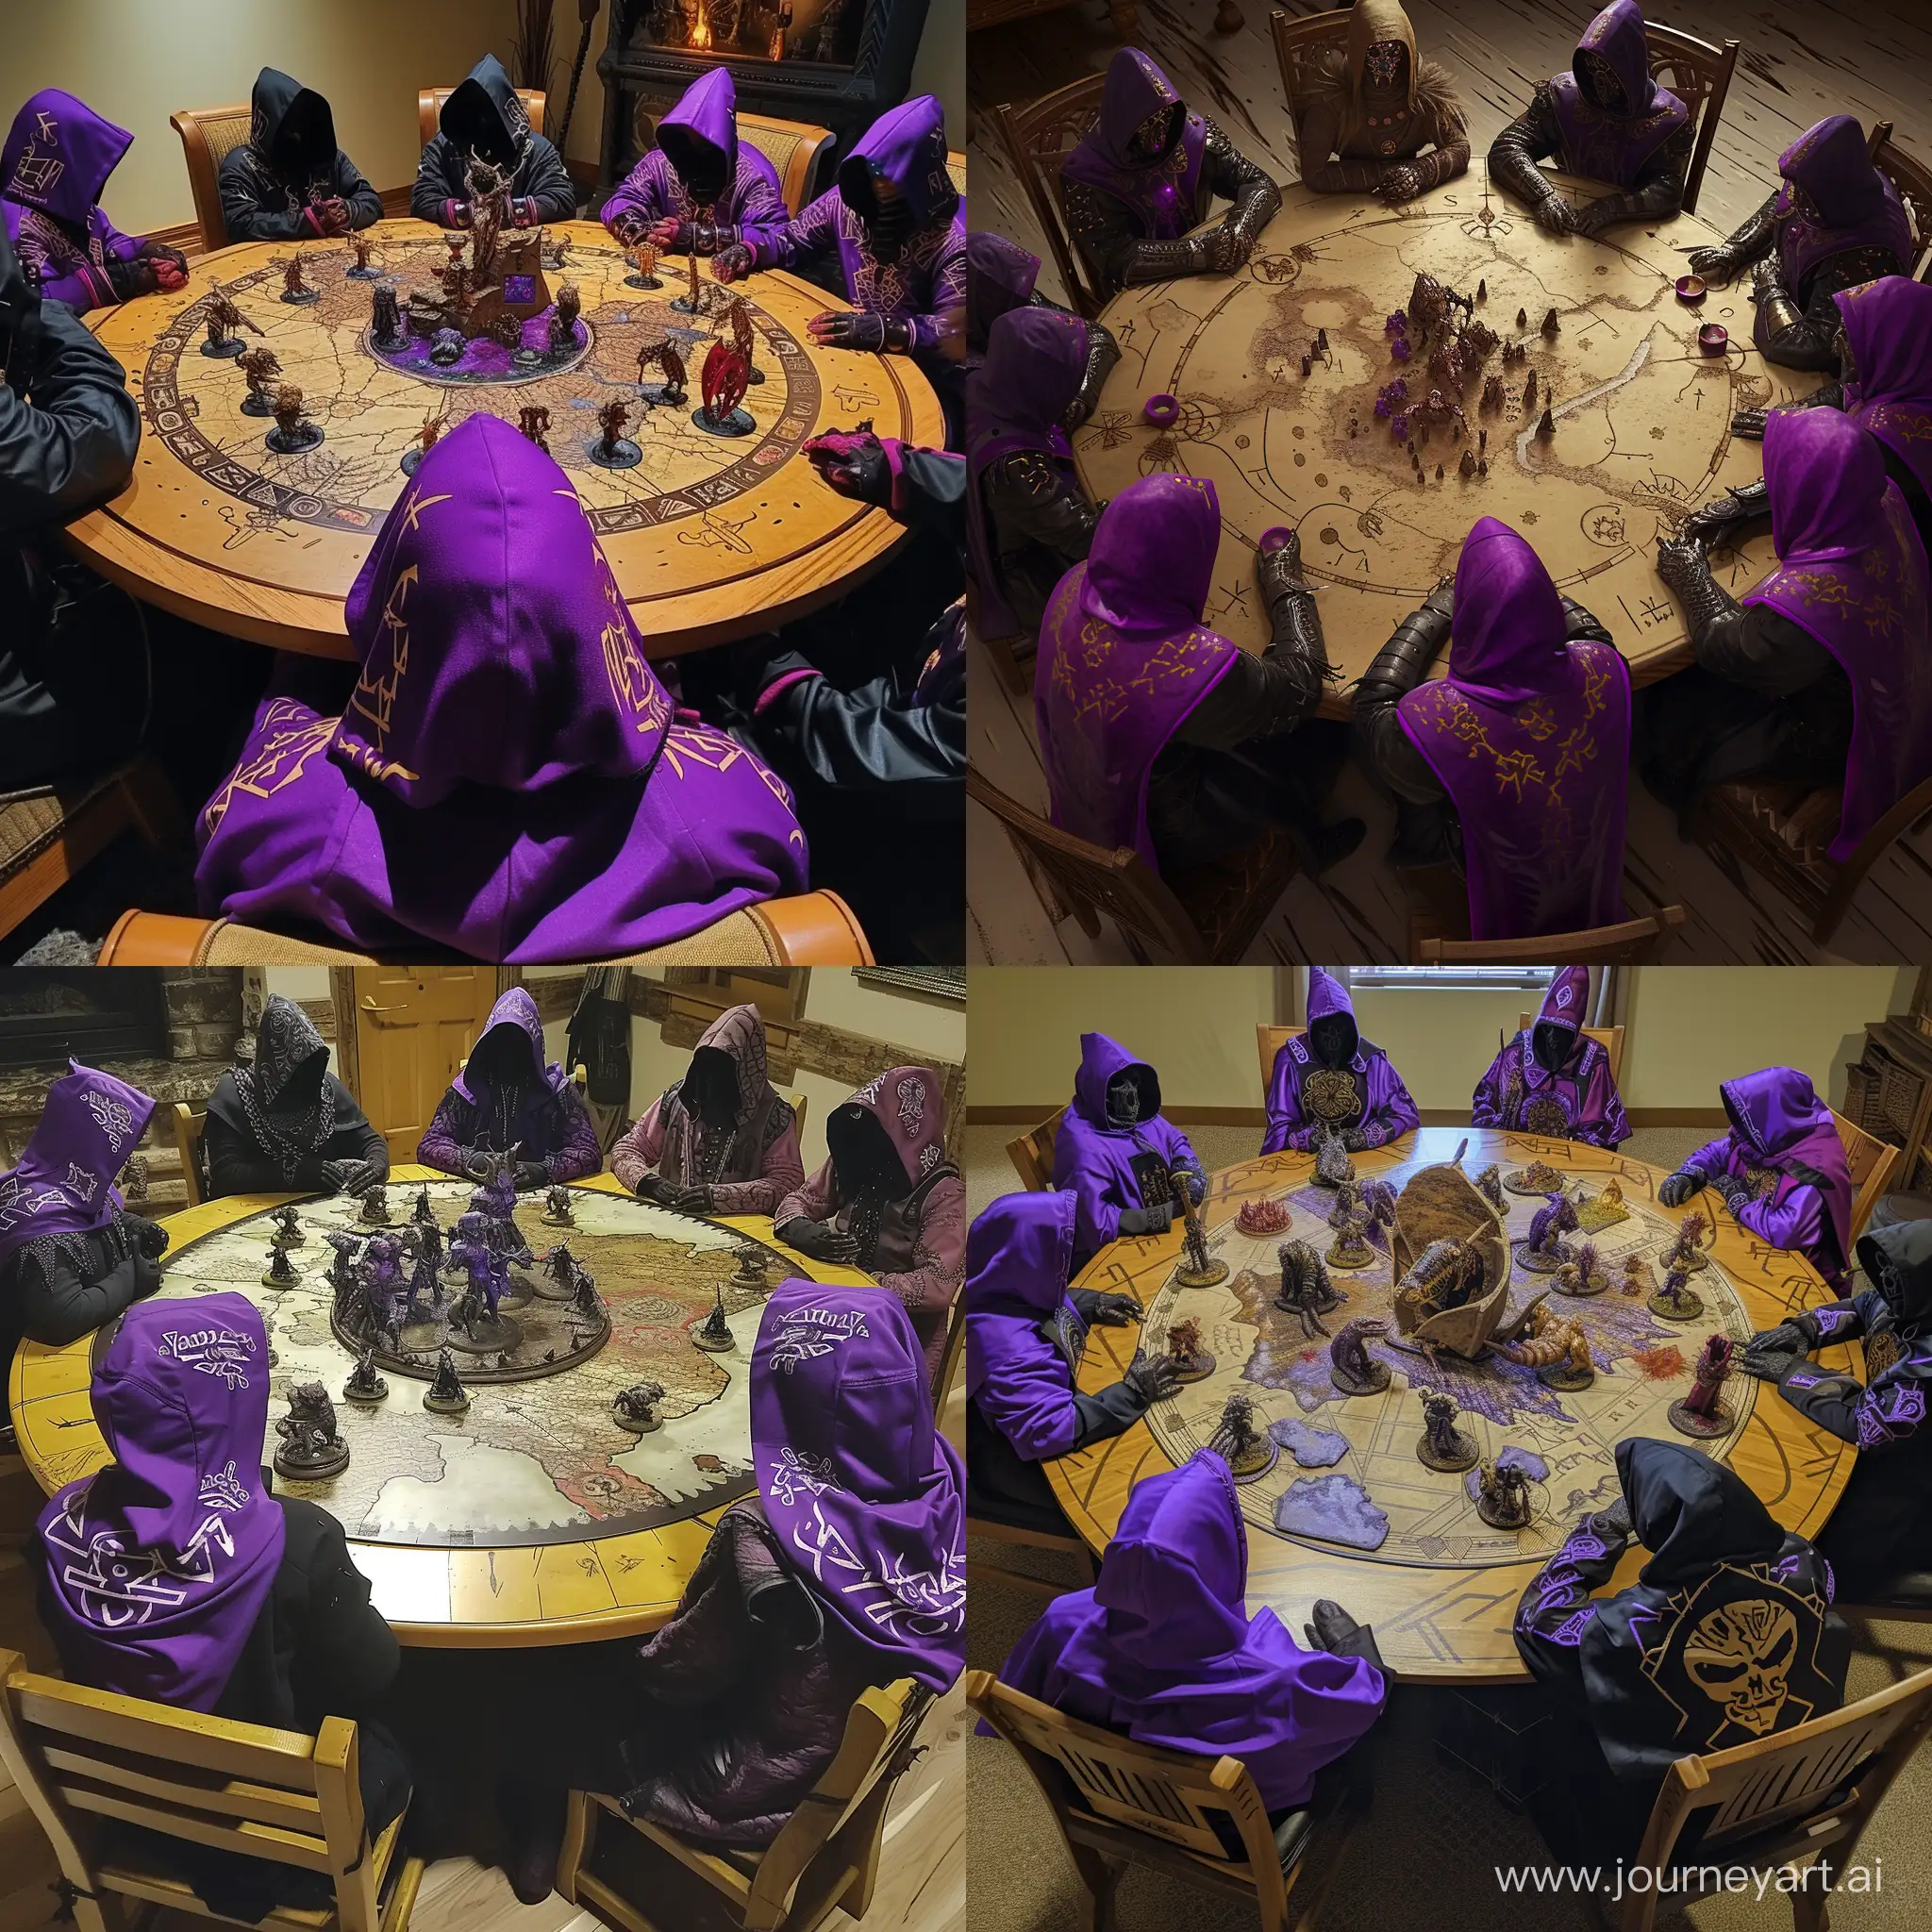 Круглый стол за которым сидят некроманты в фиолетово-чёрных капюшонах, на одежде которых нарисованы руны. А в центре стола 3д карта фентези мира, на которой отображаются различные мини-существа.